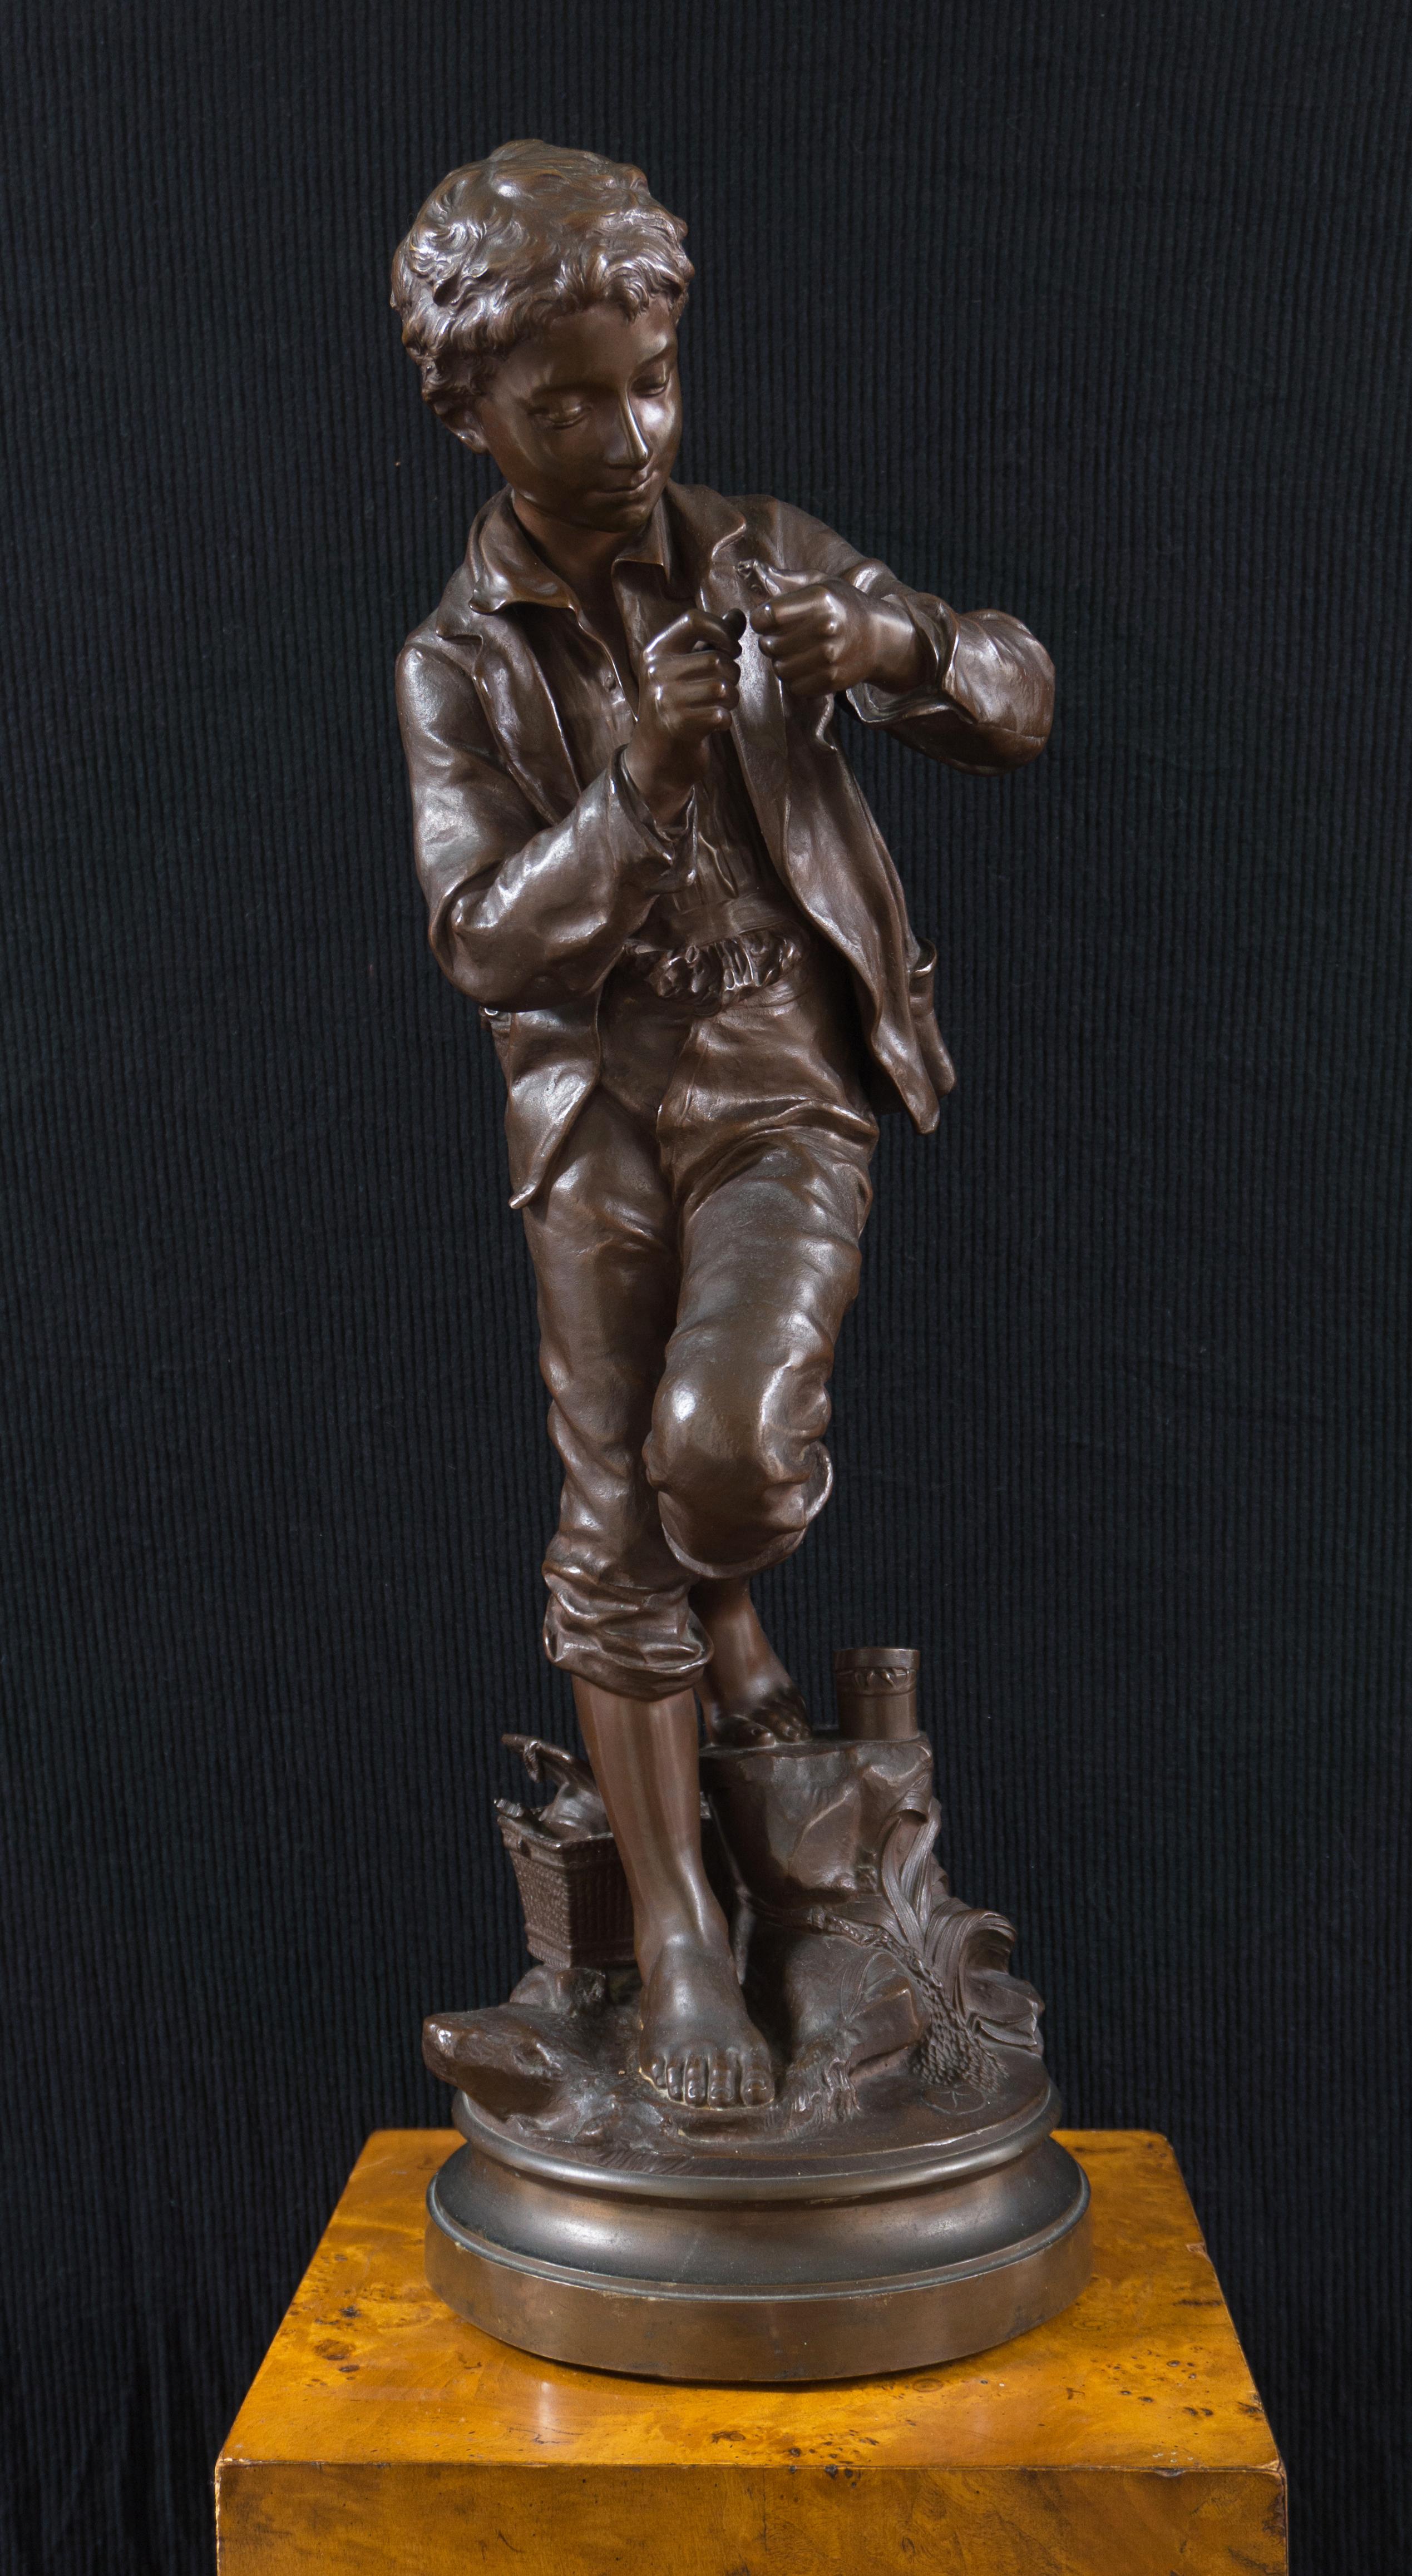 Comte Eugene D'Astanieres Figurative Sculpture – The Fisher Boy", Große Bronze, Medal of Honor, Pariser Universal-Ausstellung, 1900